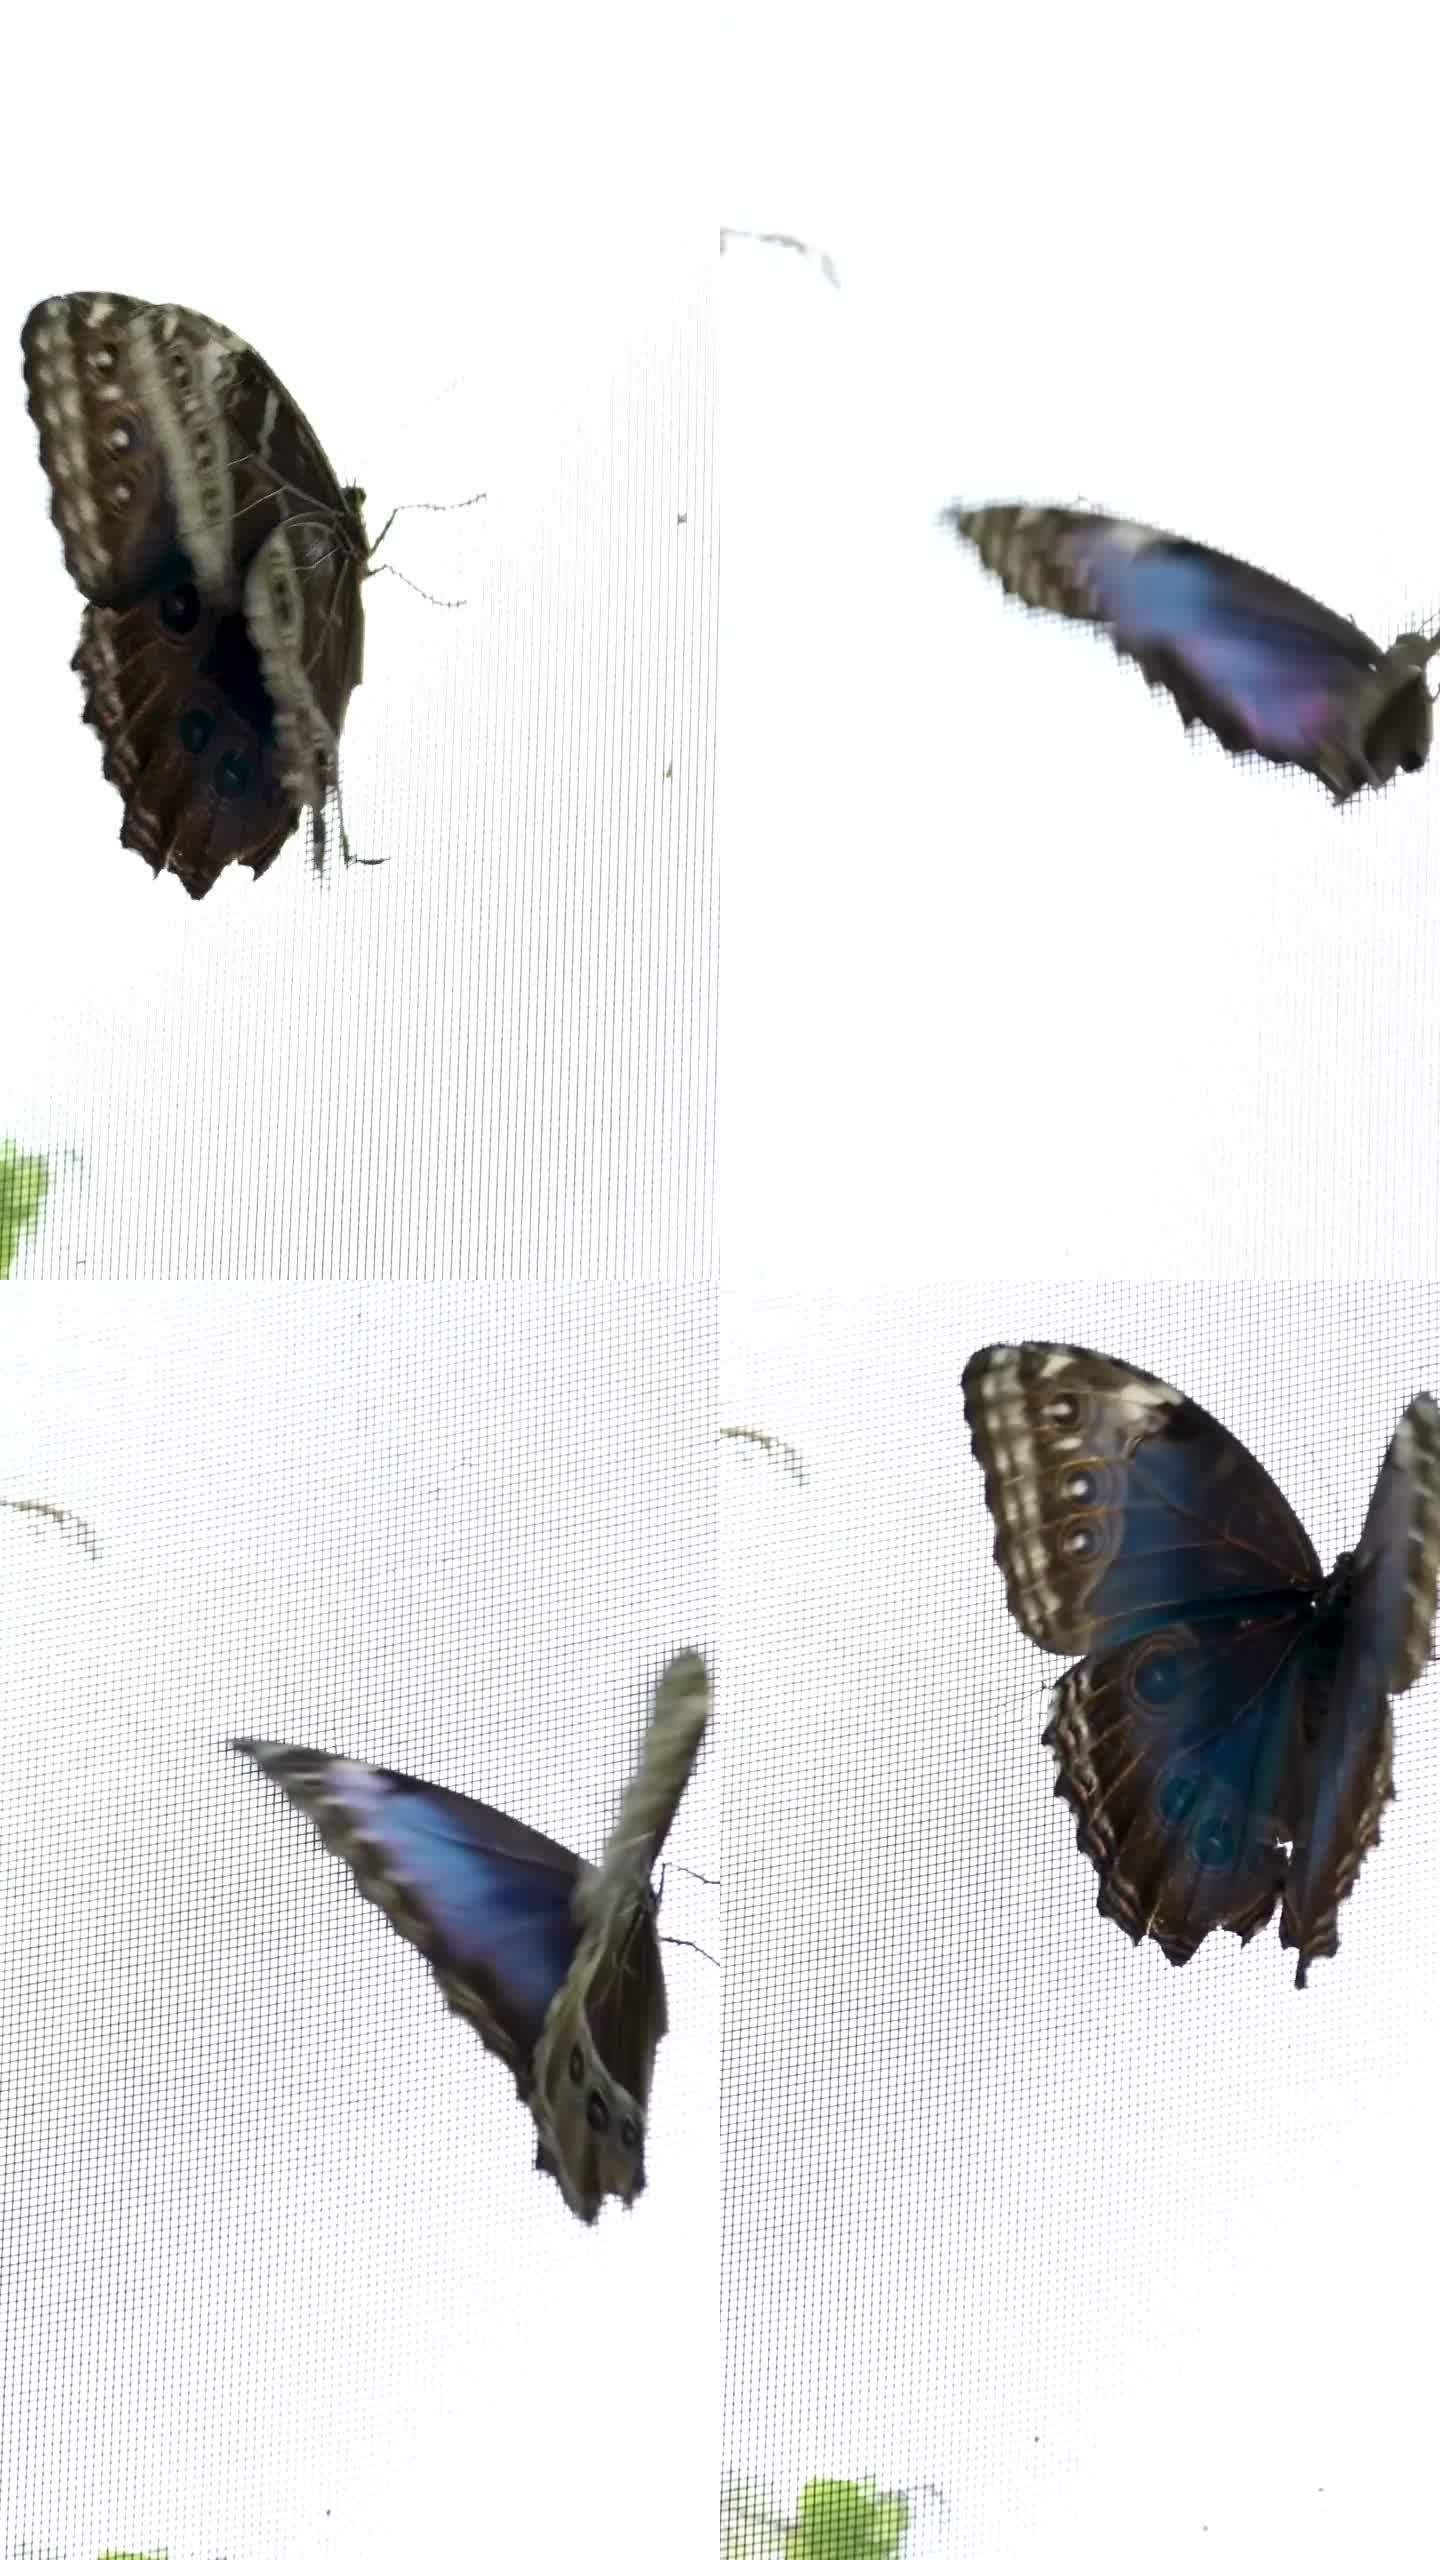 蓝色的大闪蝶在地上飞舞。底部和顶部是可见的。维多利亚蝴蝶园